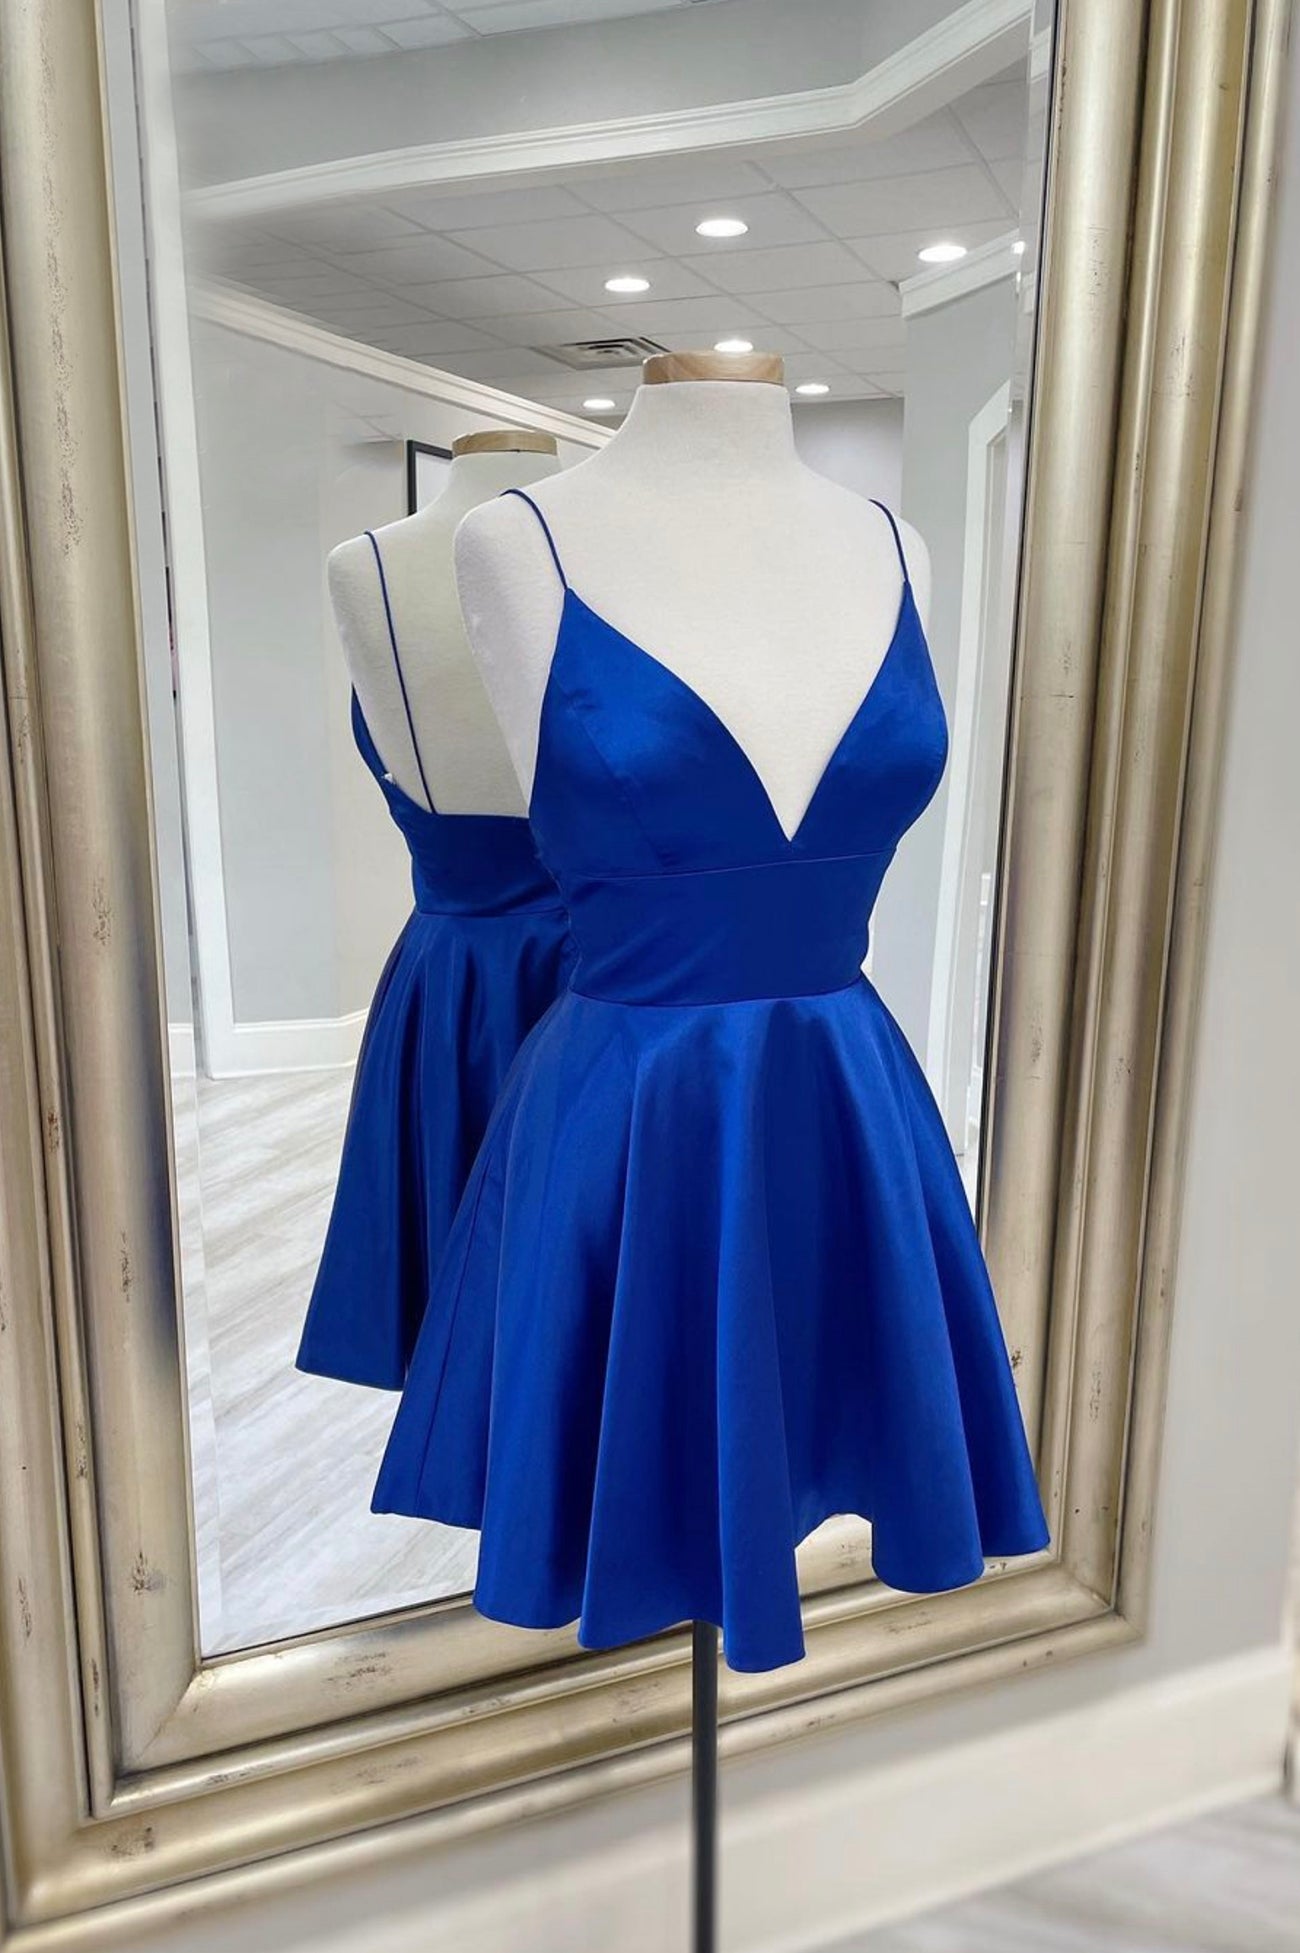 Blue V-Neck Satin Short Prom Dress Outfits For Girls,A-Line Cocktail Dresses For Black girls Short Formal